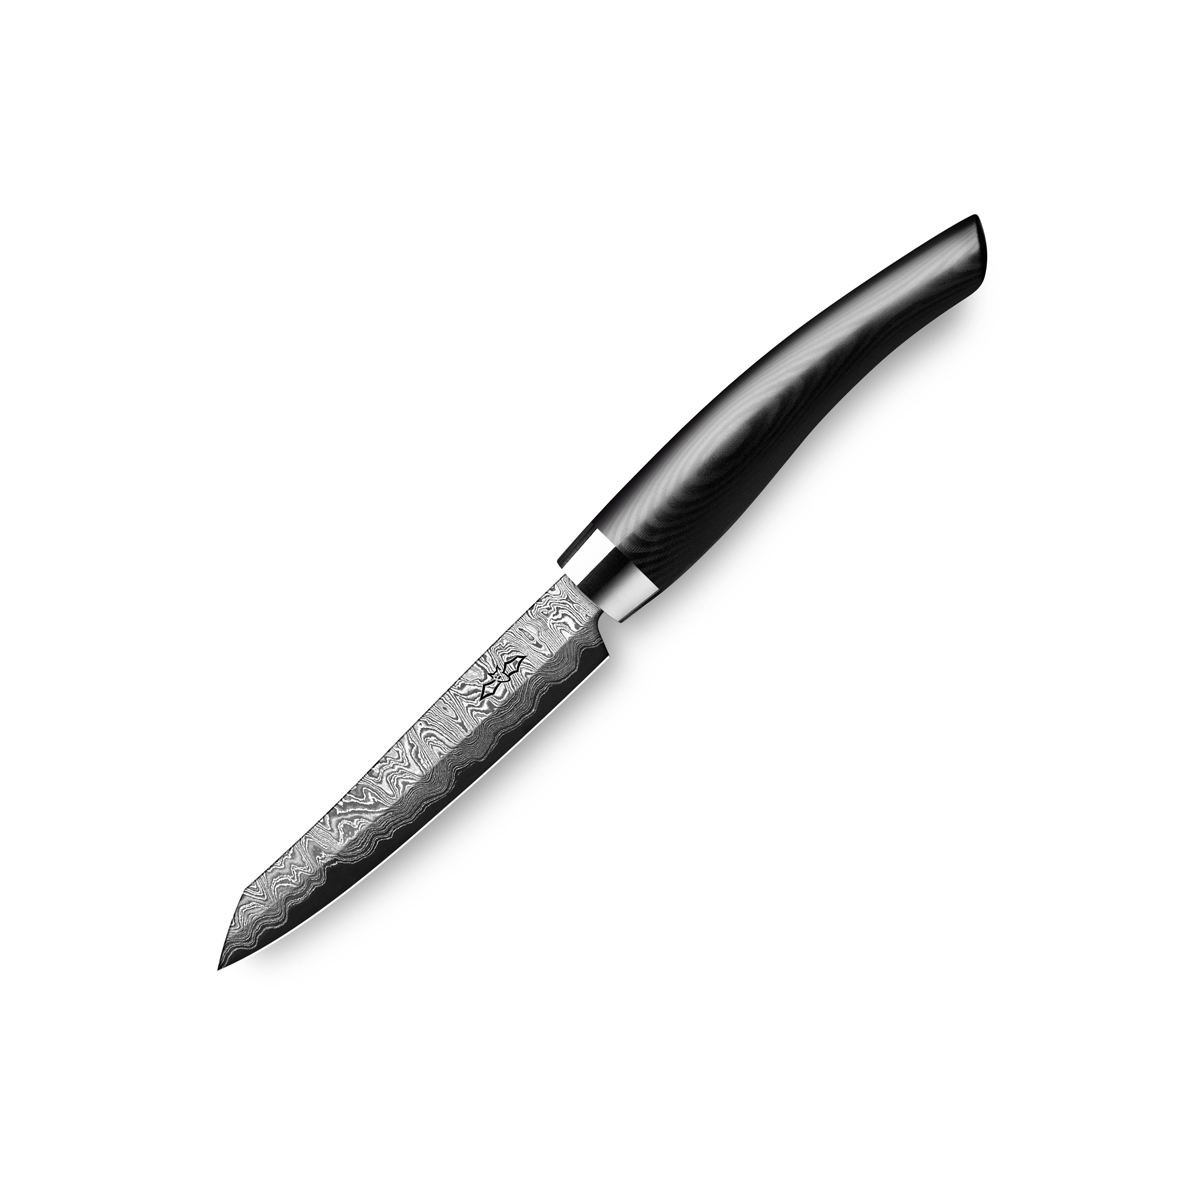 Nesmuk Exklusiv C150 Damast Officemesser 9 cm - Griff Micarta schwarz